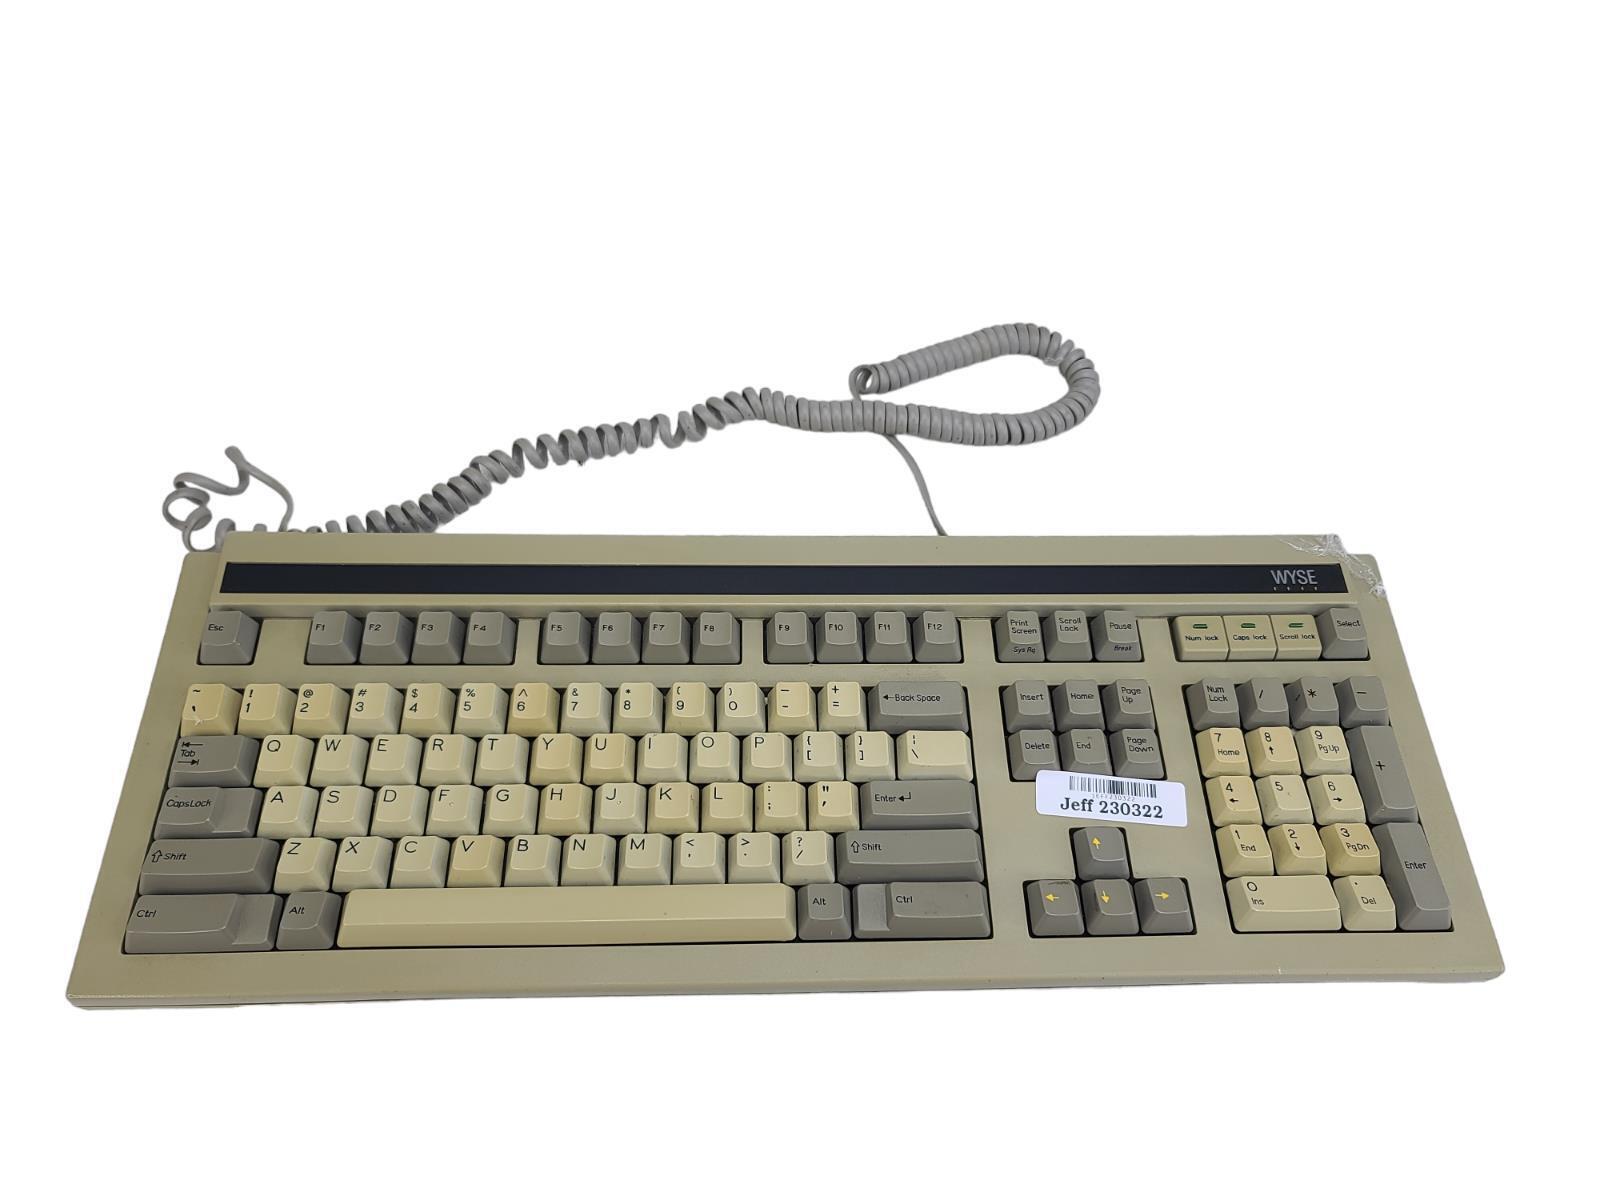 Wyse 840358-01 PC Enhanced Terminal Keyboard Vintage Wyse PCE Keyboard